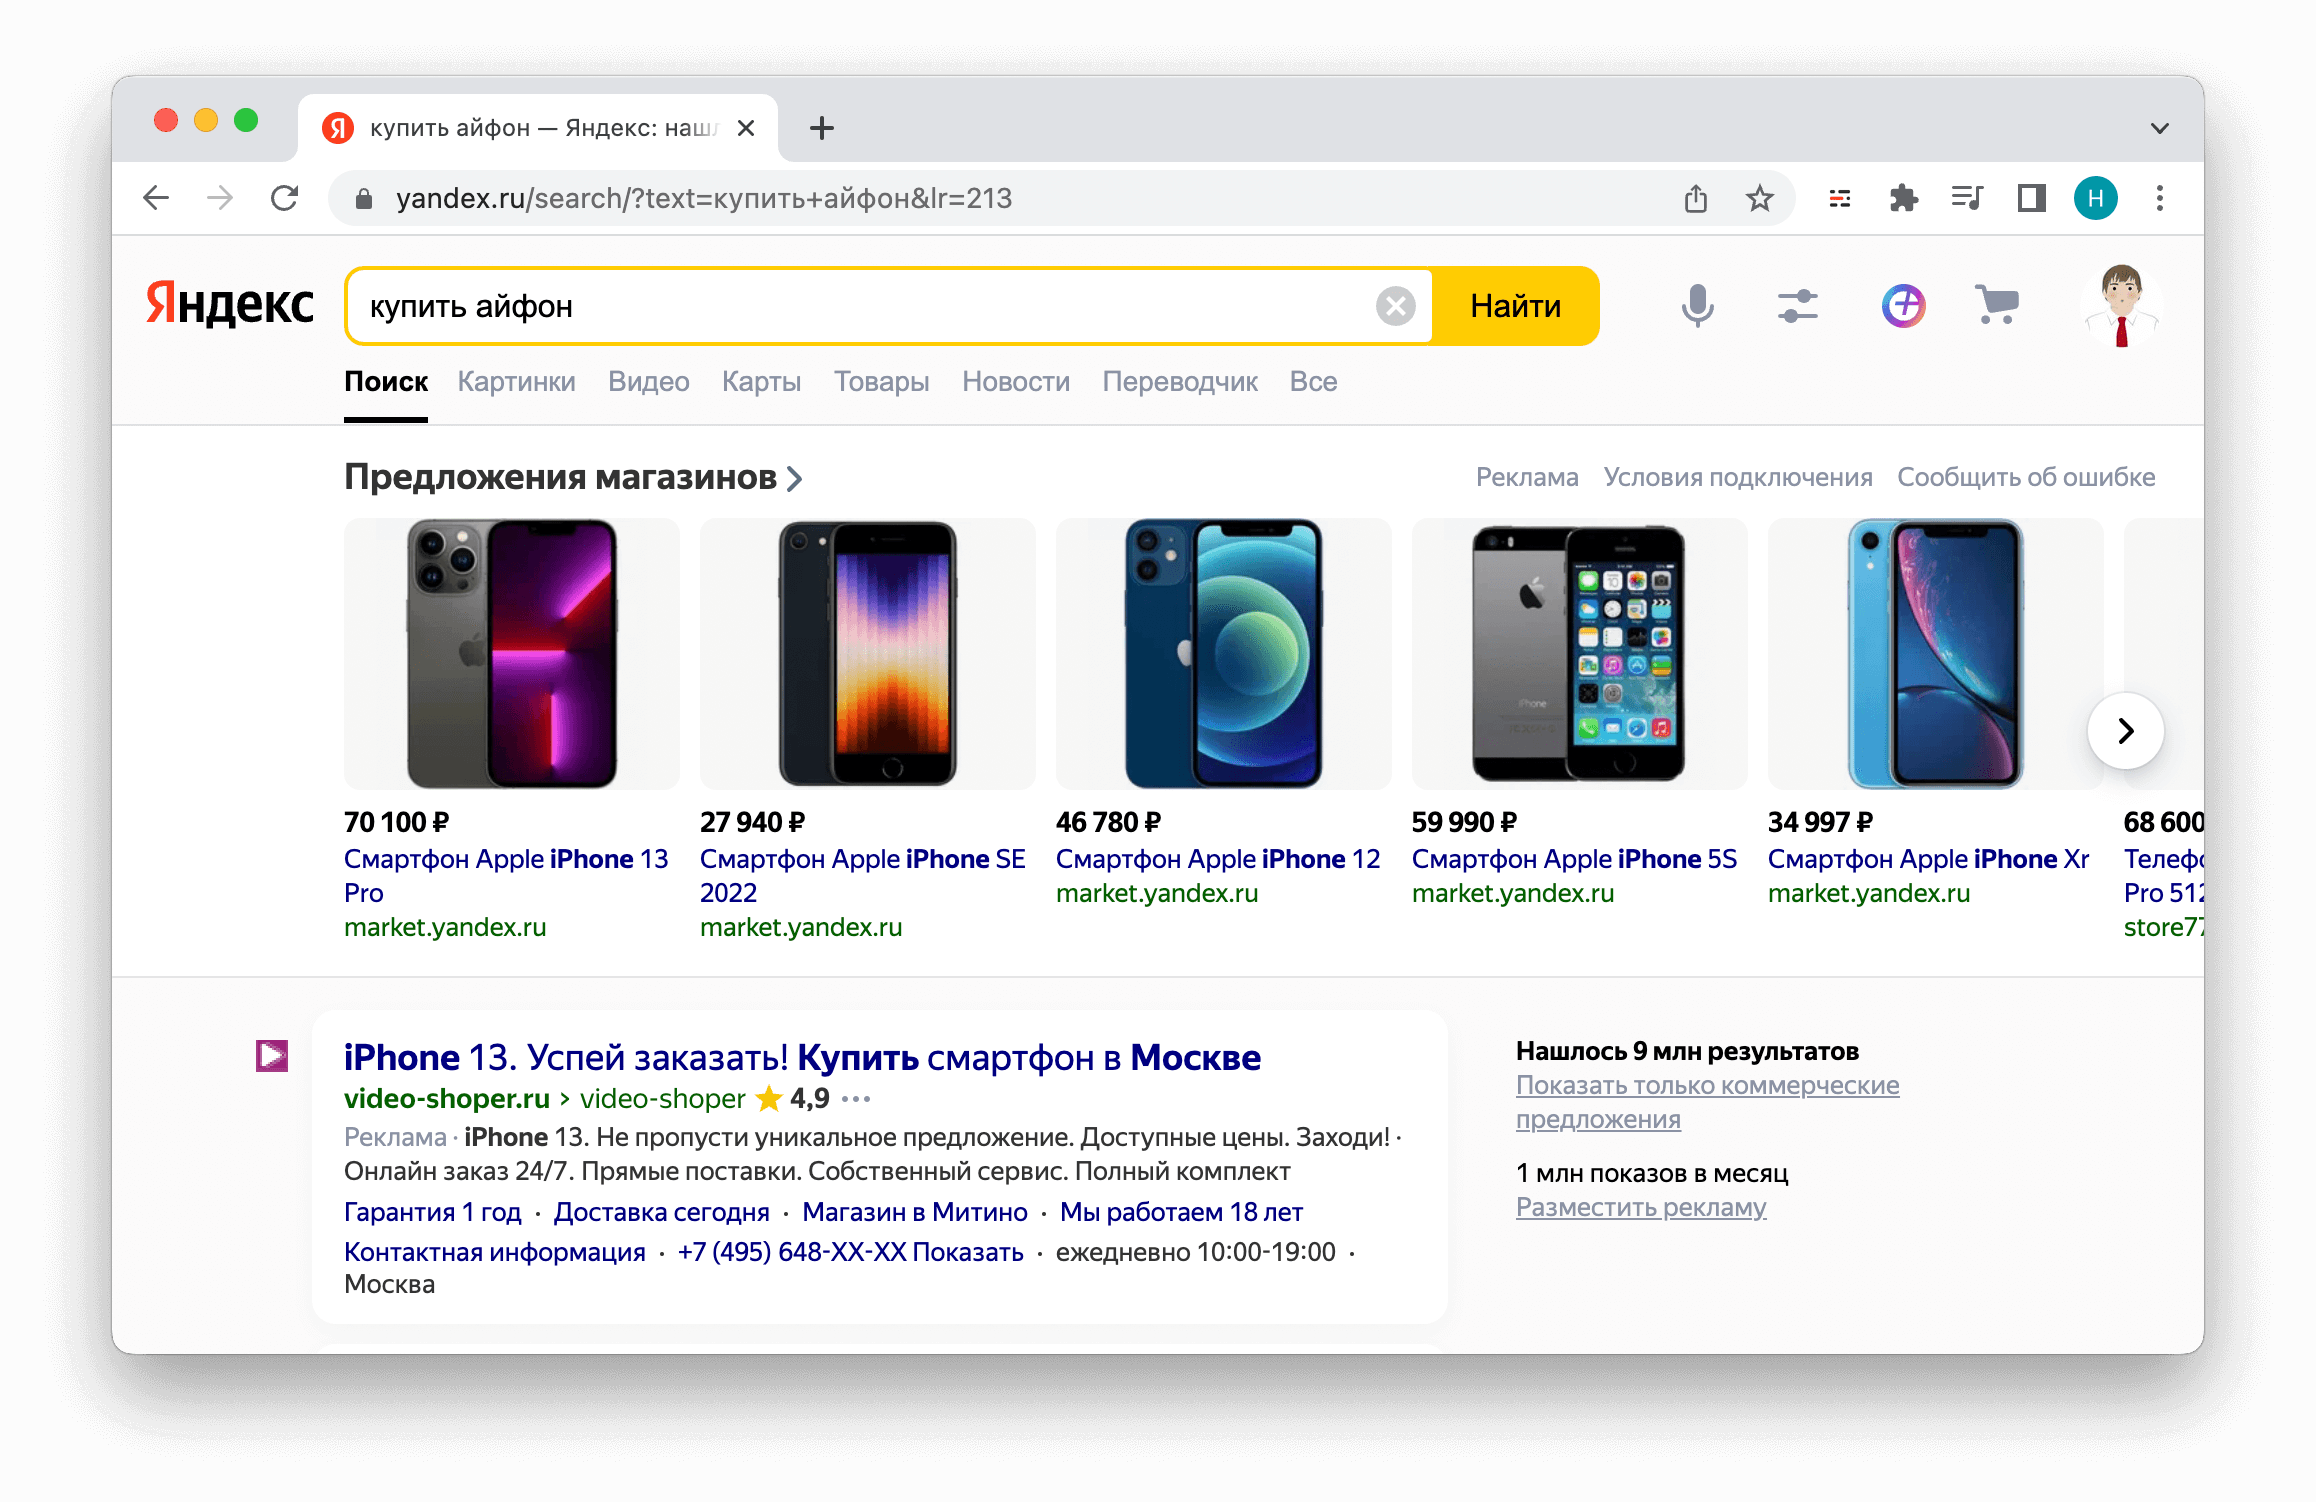 Товарная галерея под поисковой строкой Яндекса на главной странице